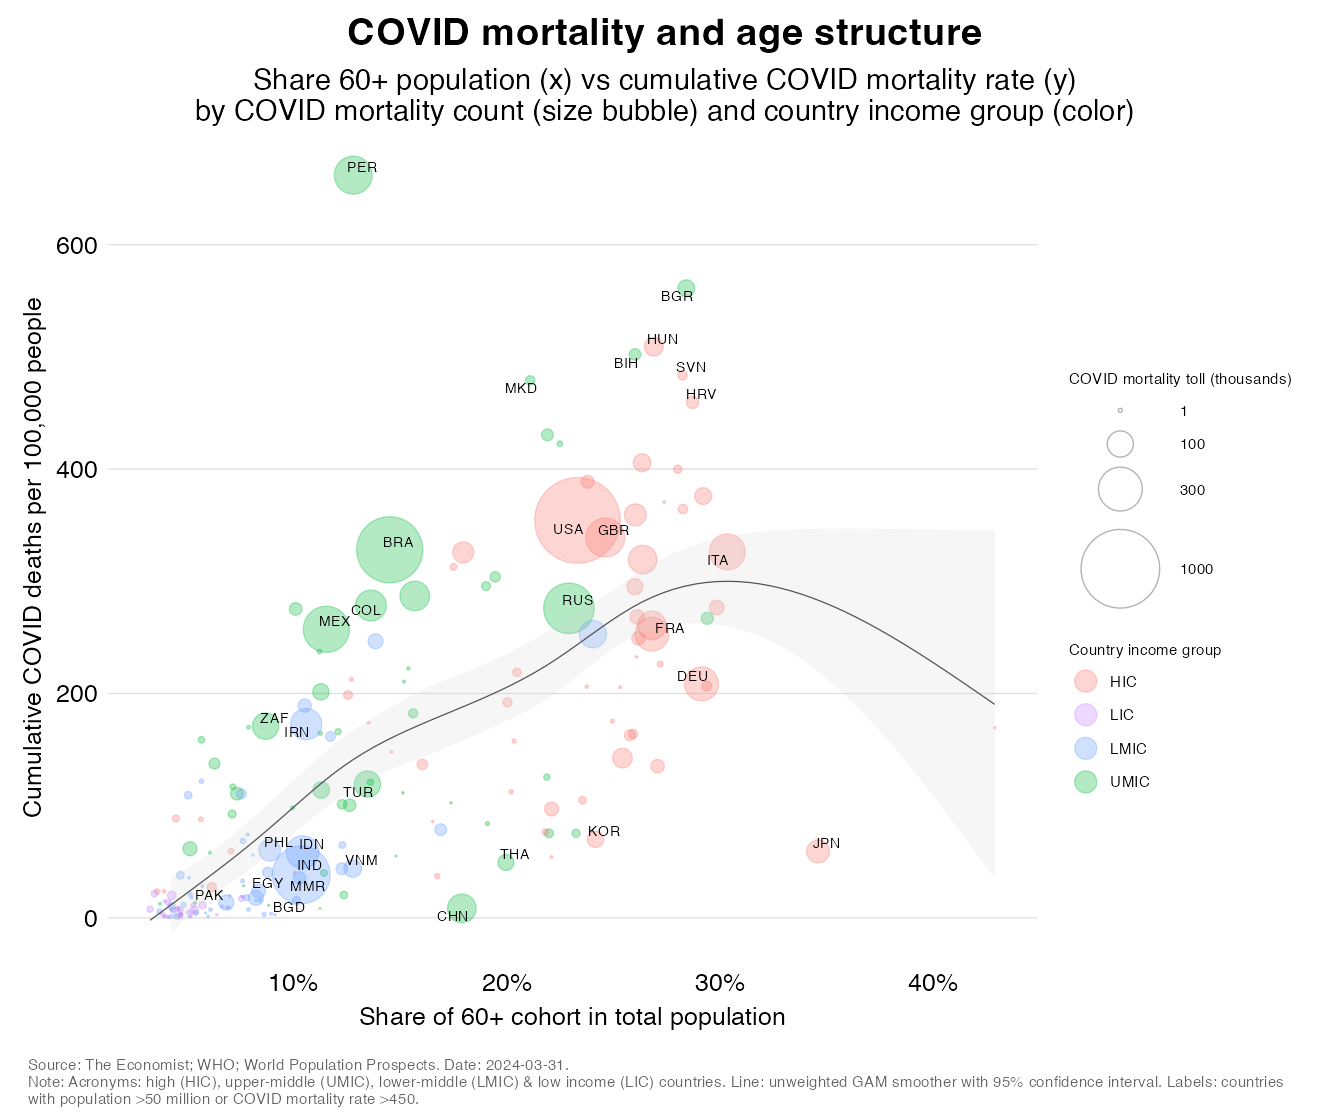 Demographics and COVID mortality